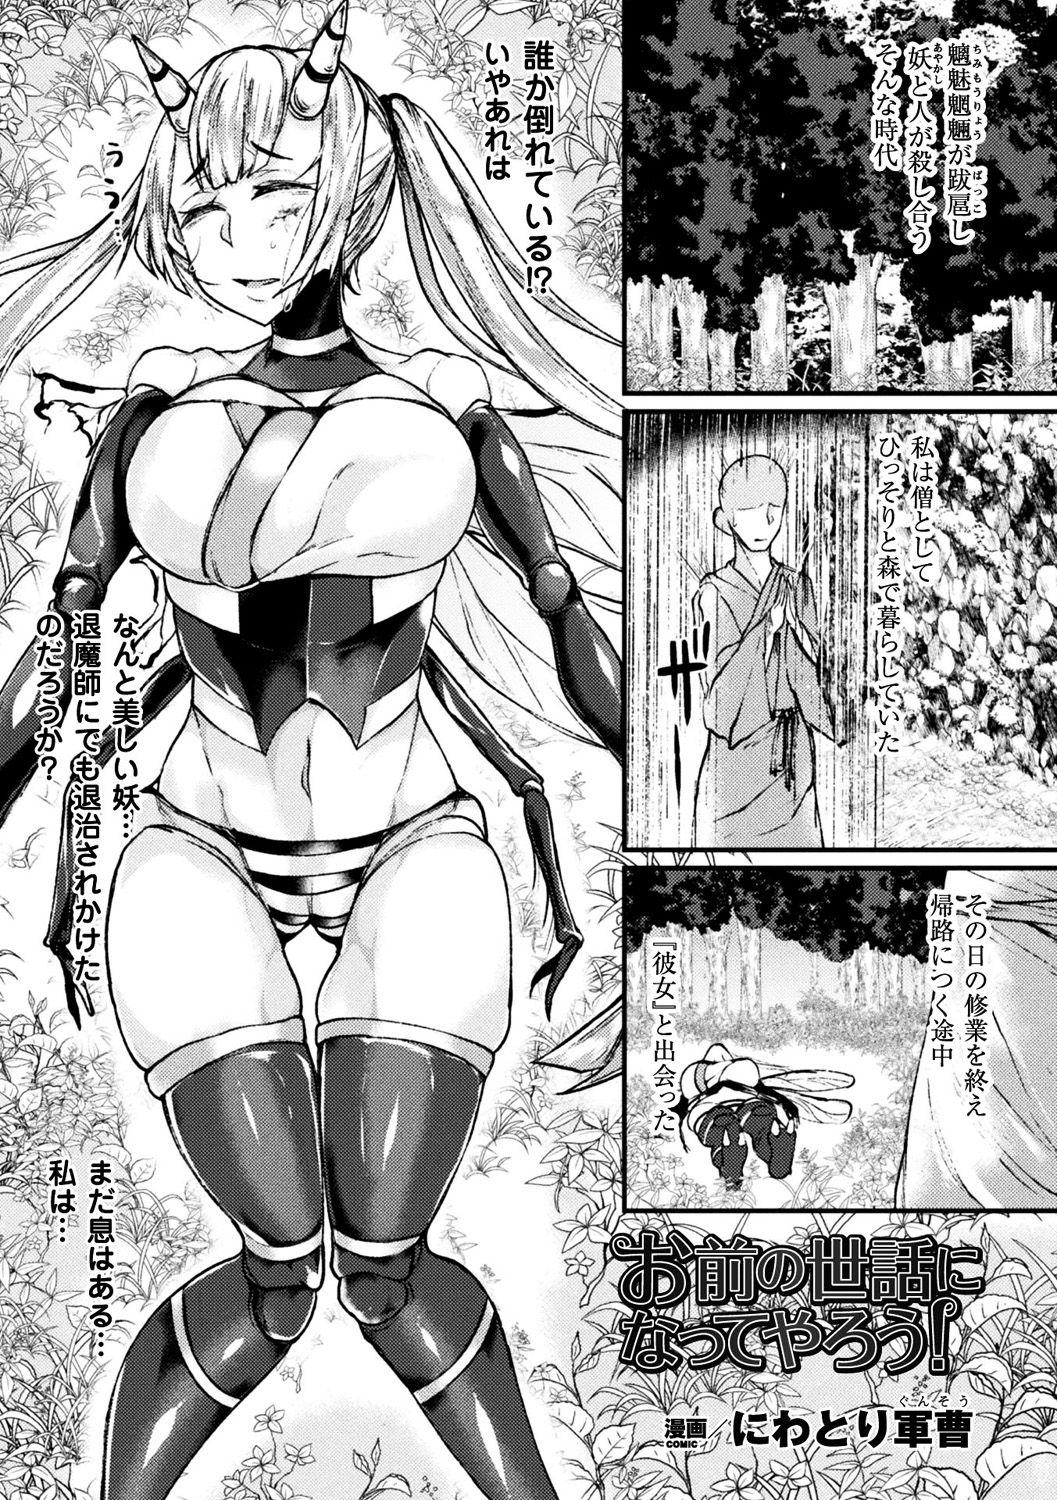 Bessatsu Comic Unreal Monster Musume Paradise Digital Ban Vol. 10 38